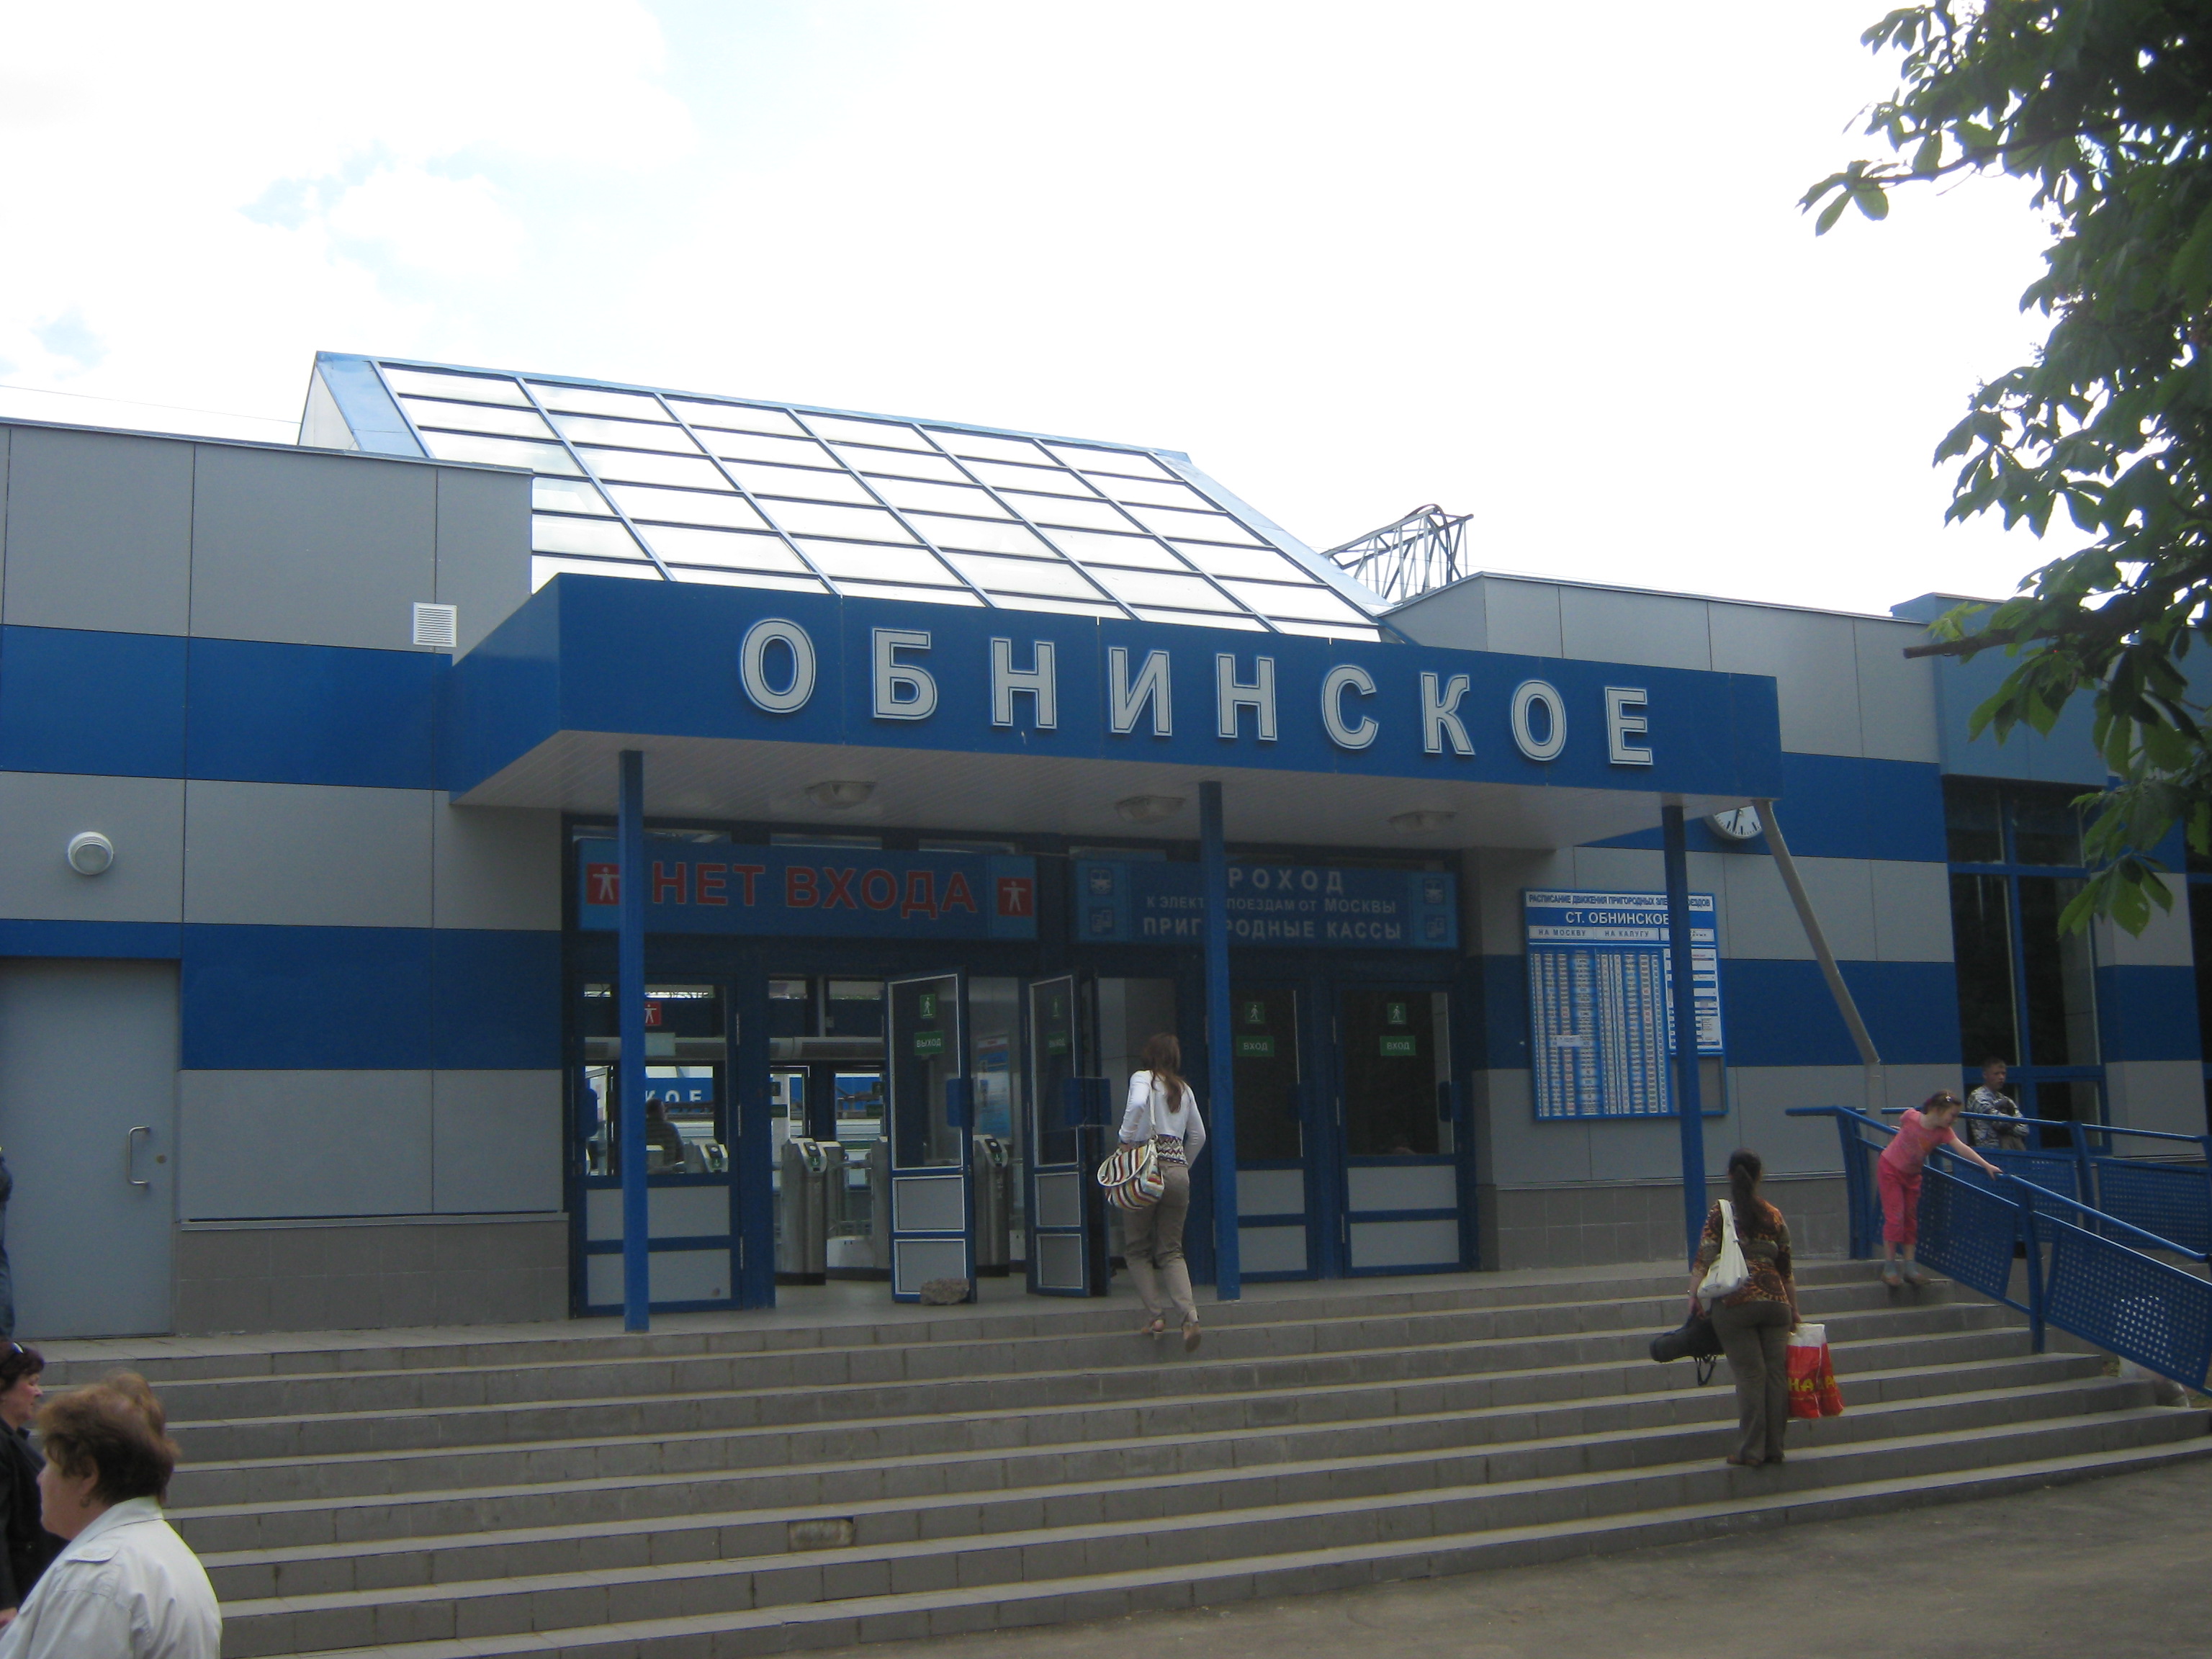 Обнинское адрес. Станция Обнинск. ЖД станция Обнинское. Вокзал Обнинск. Обнинск ж д вокзал.